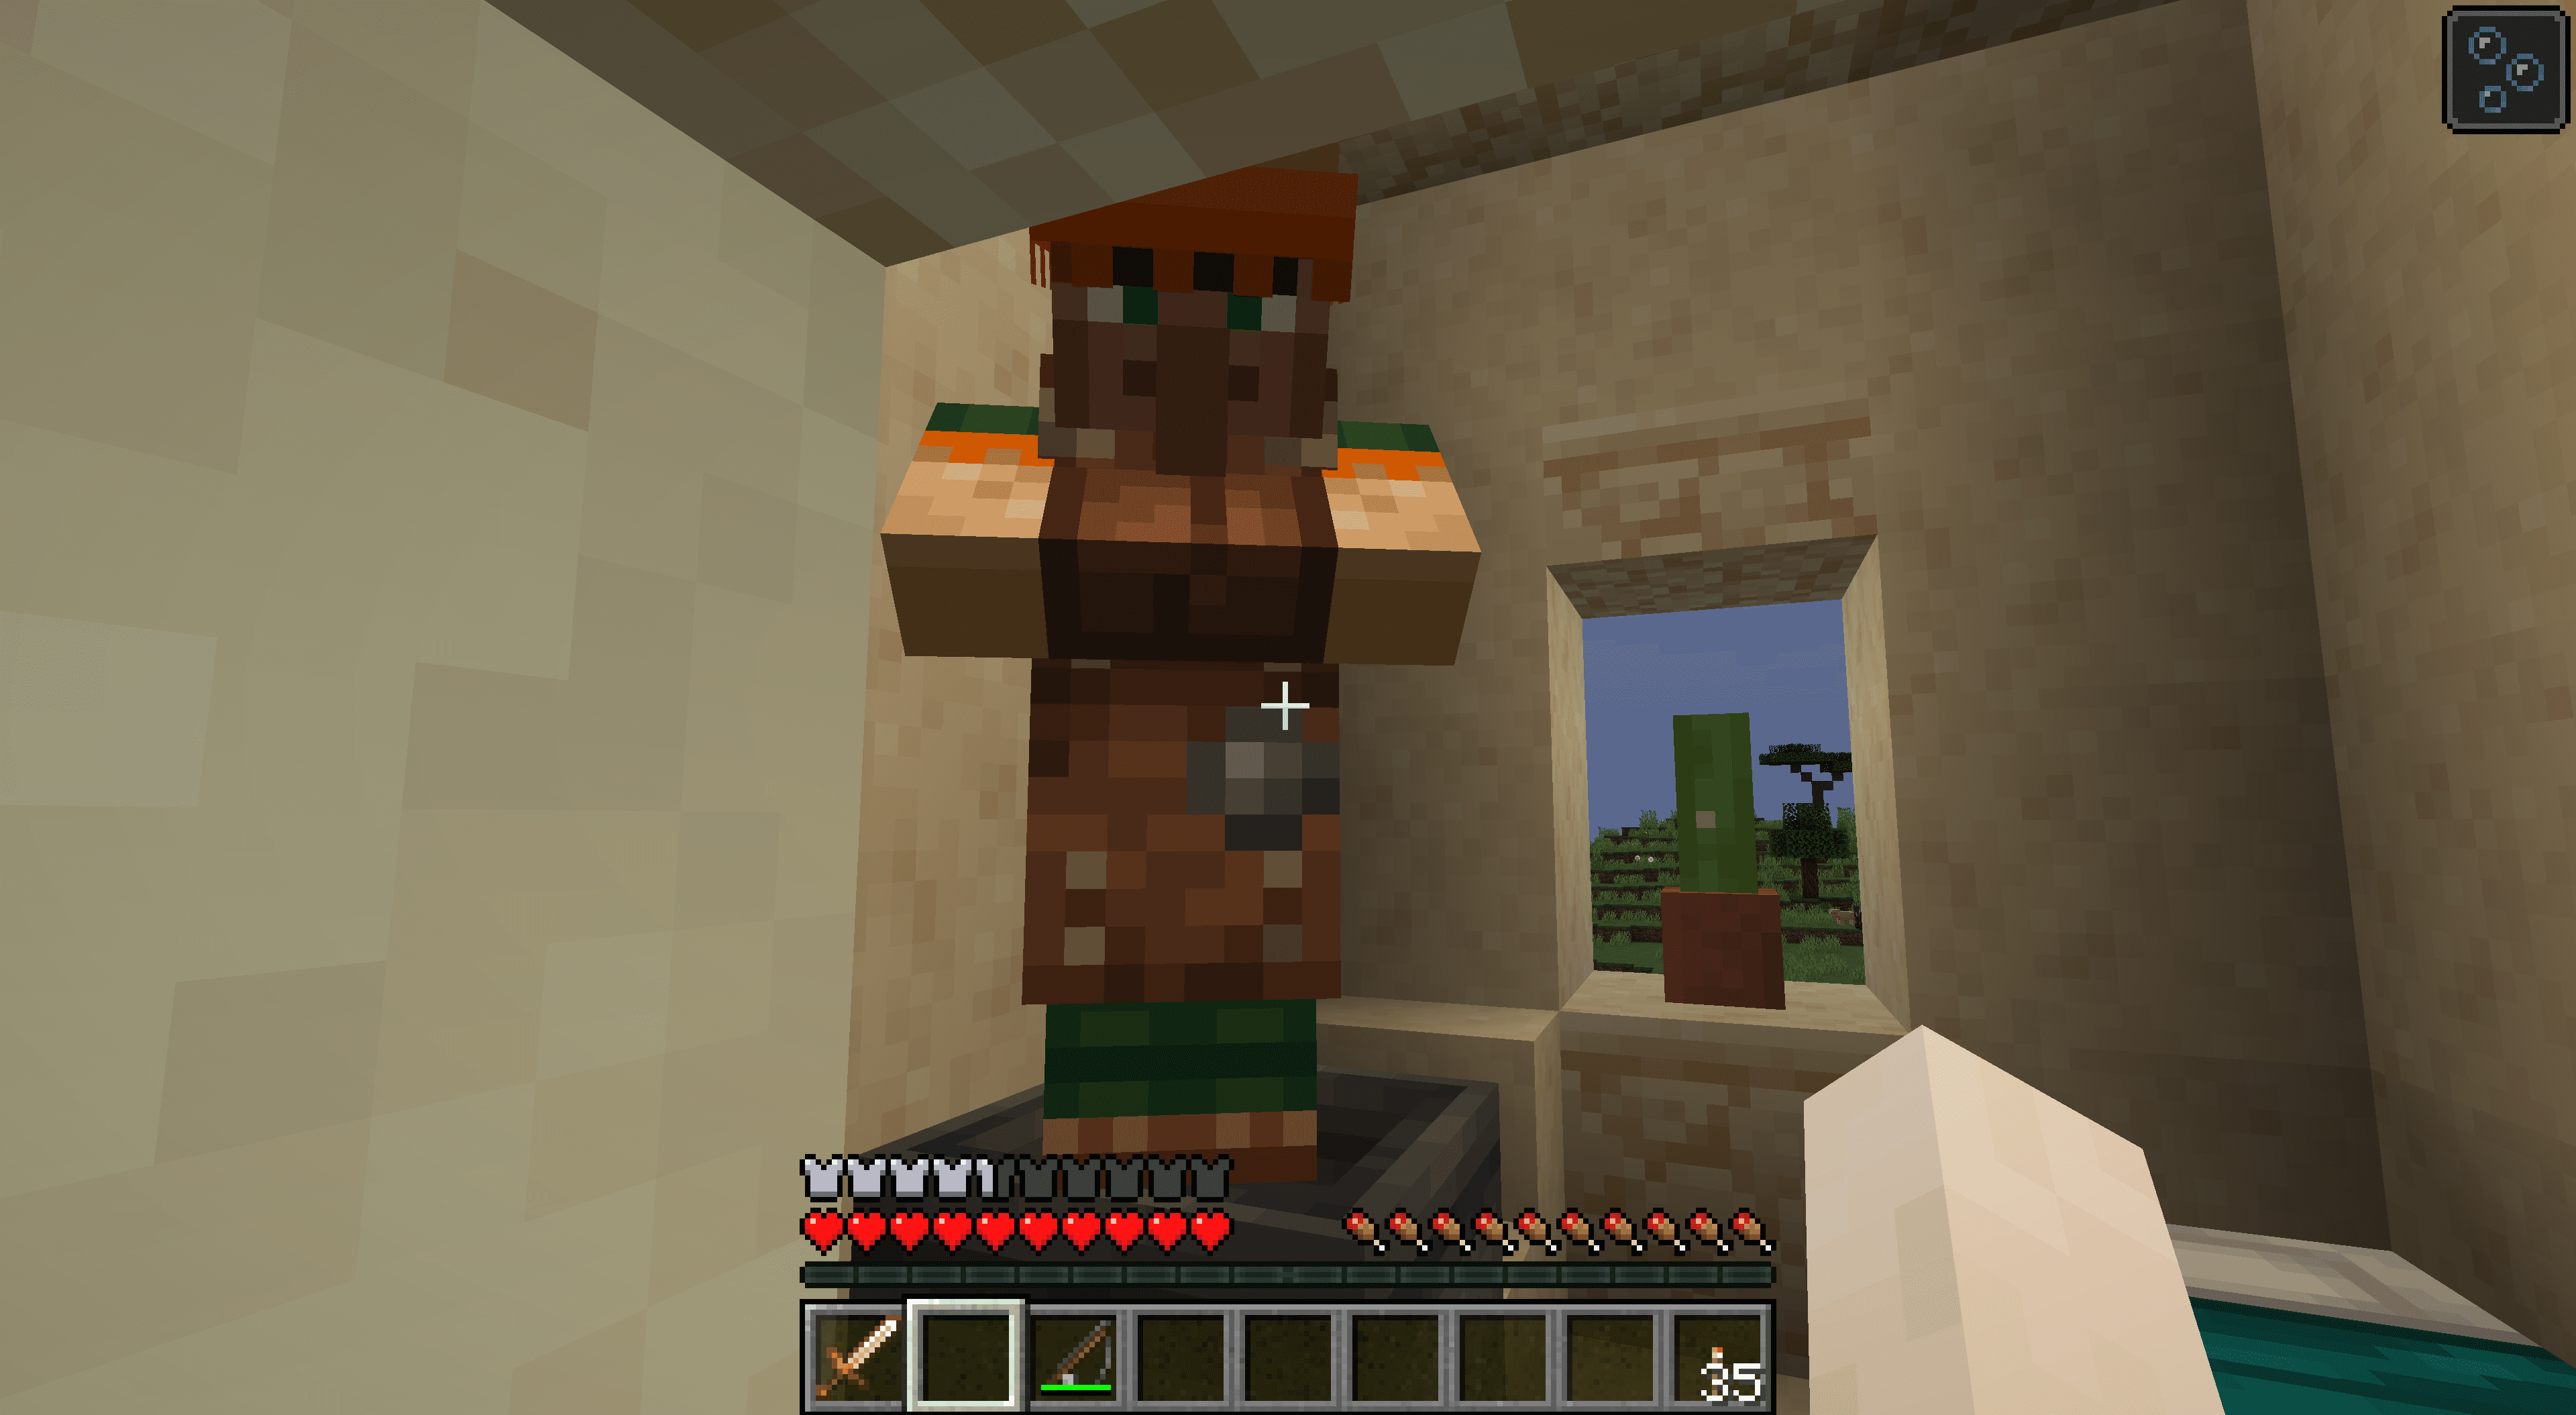 Kožený pracovník v Minecraftu.